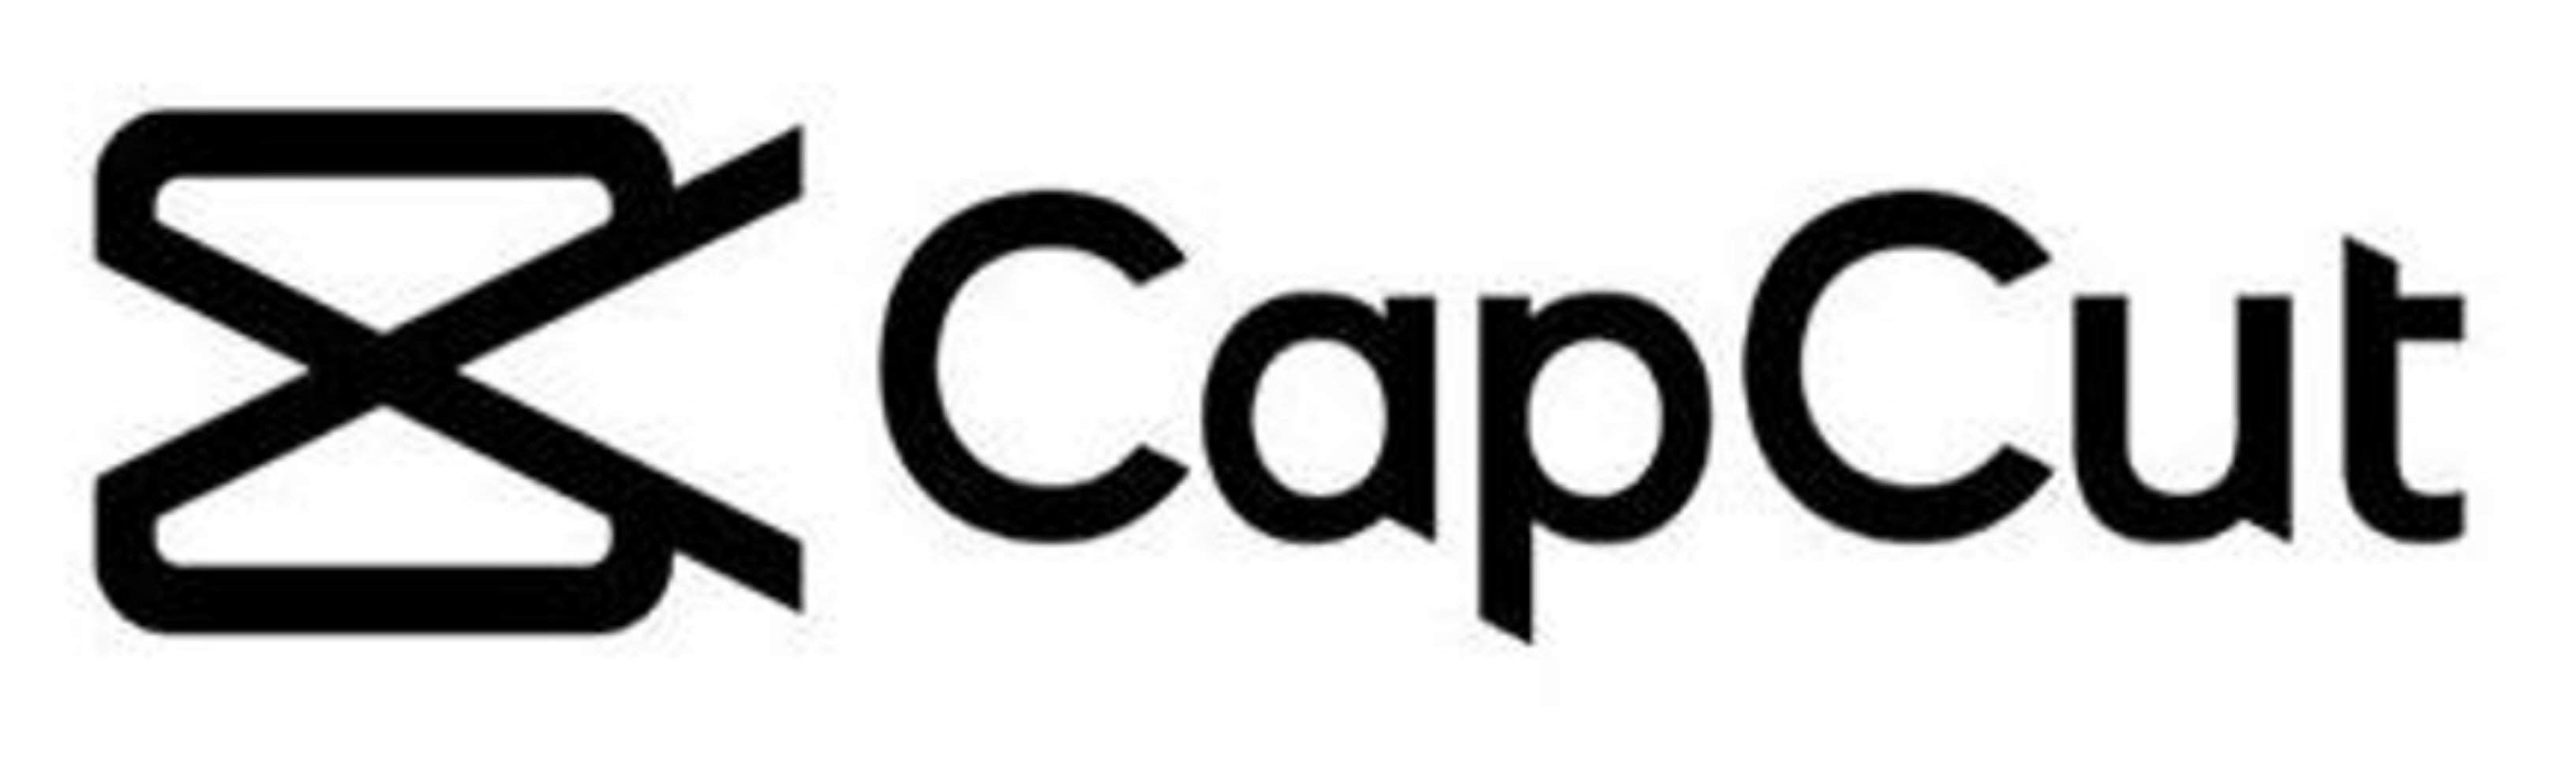 Me capcut. CAPCUT logo. CAPCUT лого. Значок CAPCUT на прозрачном фоне. CAPCUT без фона.